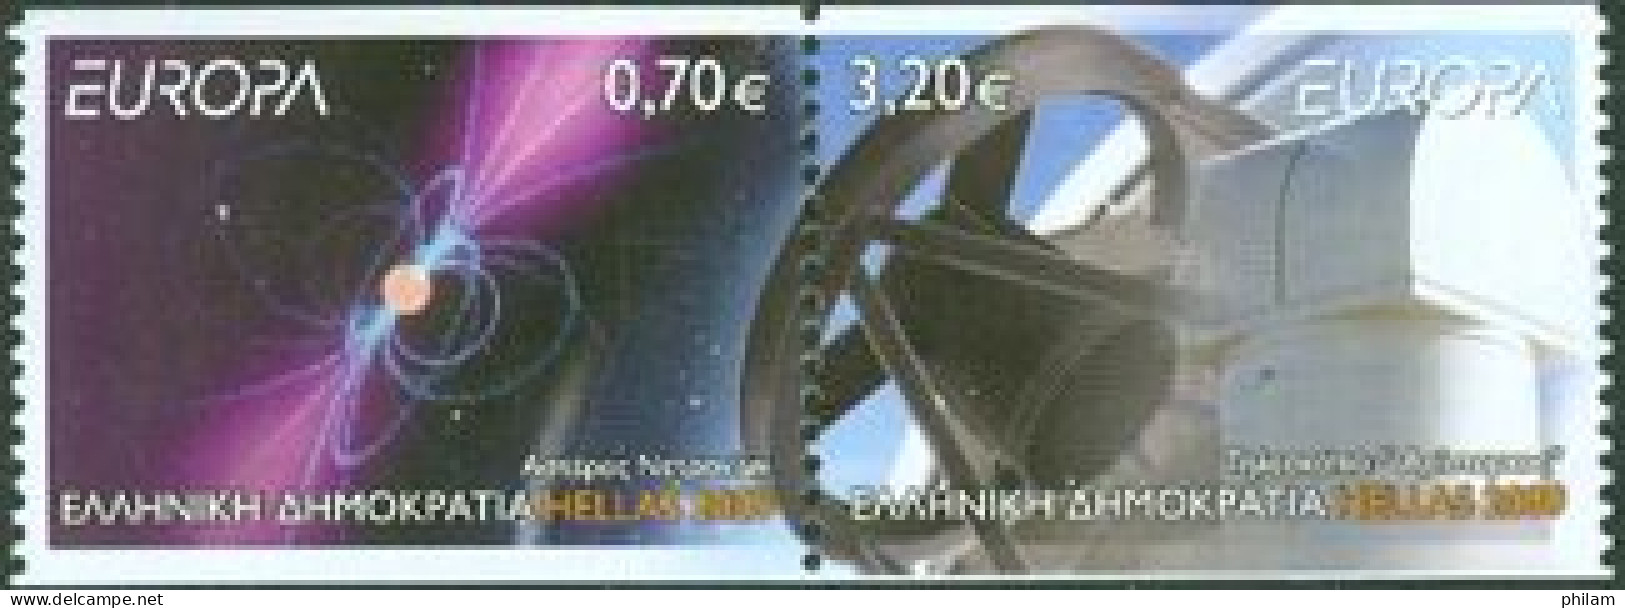 GRECE 2009 - Europa - L'astronomie - 2 V. Se Tenant - Non Dentelés 2 Cotés - De Carnet - Neufs